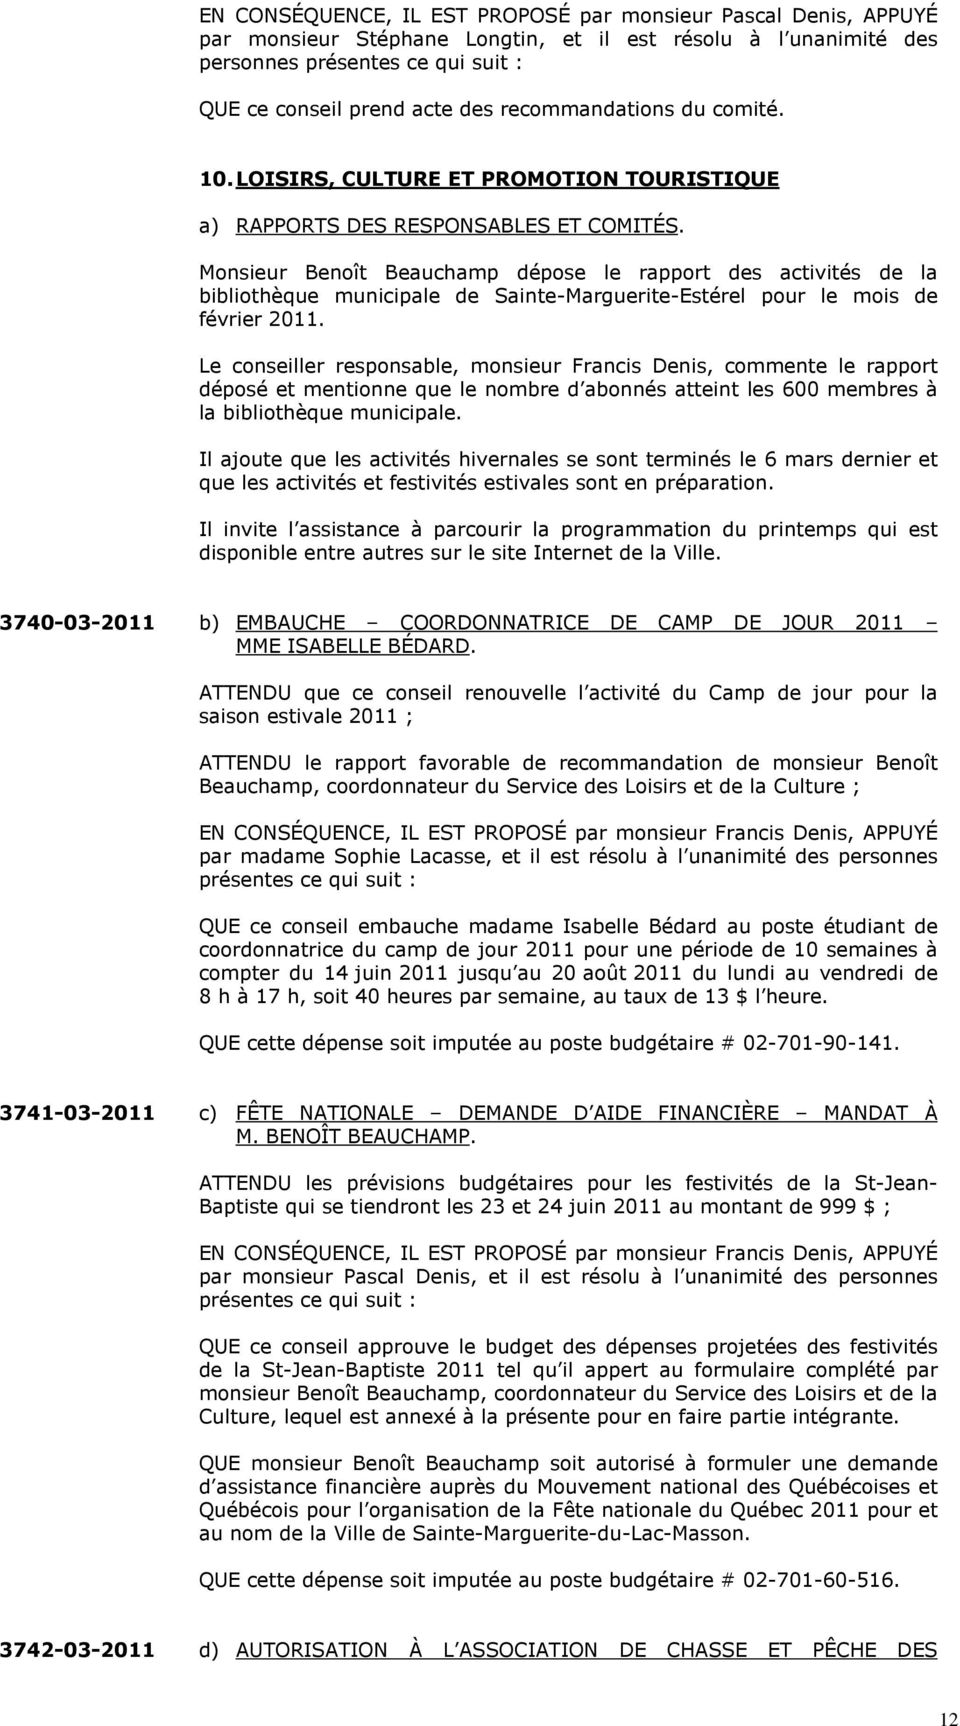 Monsieur Benoît Beauchamp dépose le rapport des activités de la bibliothèque municipale de Sainte-Marguerite-Estérel pour le mois de février 2011.